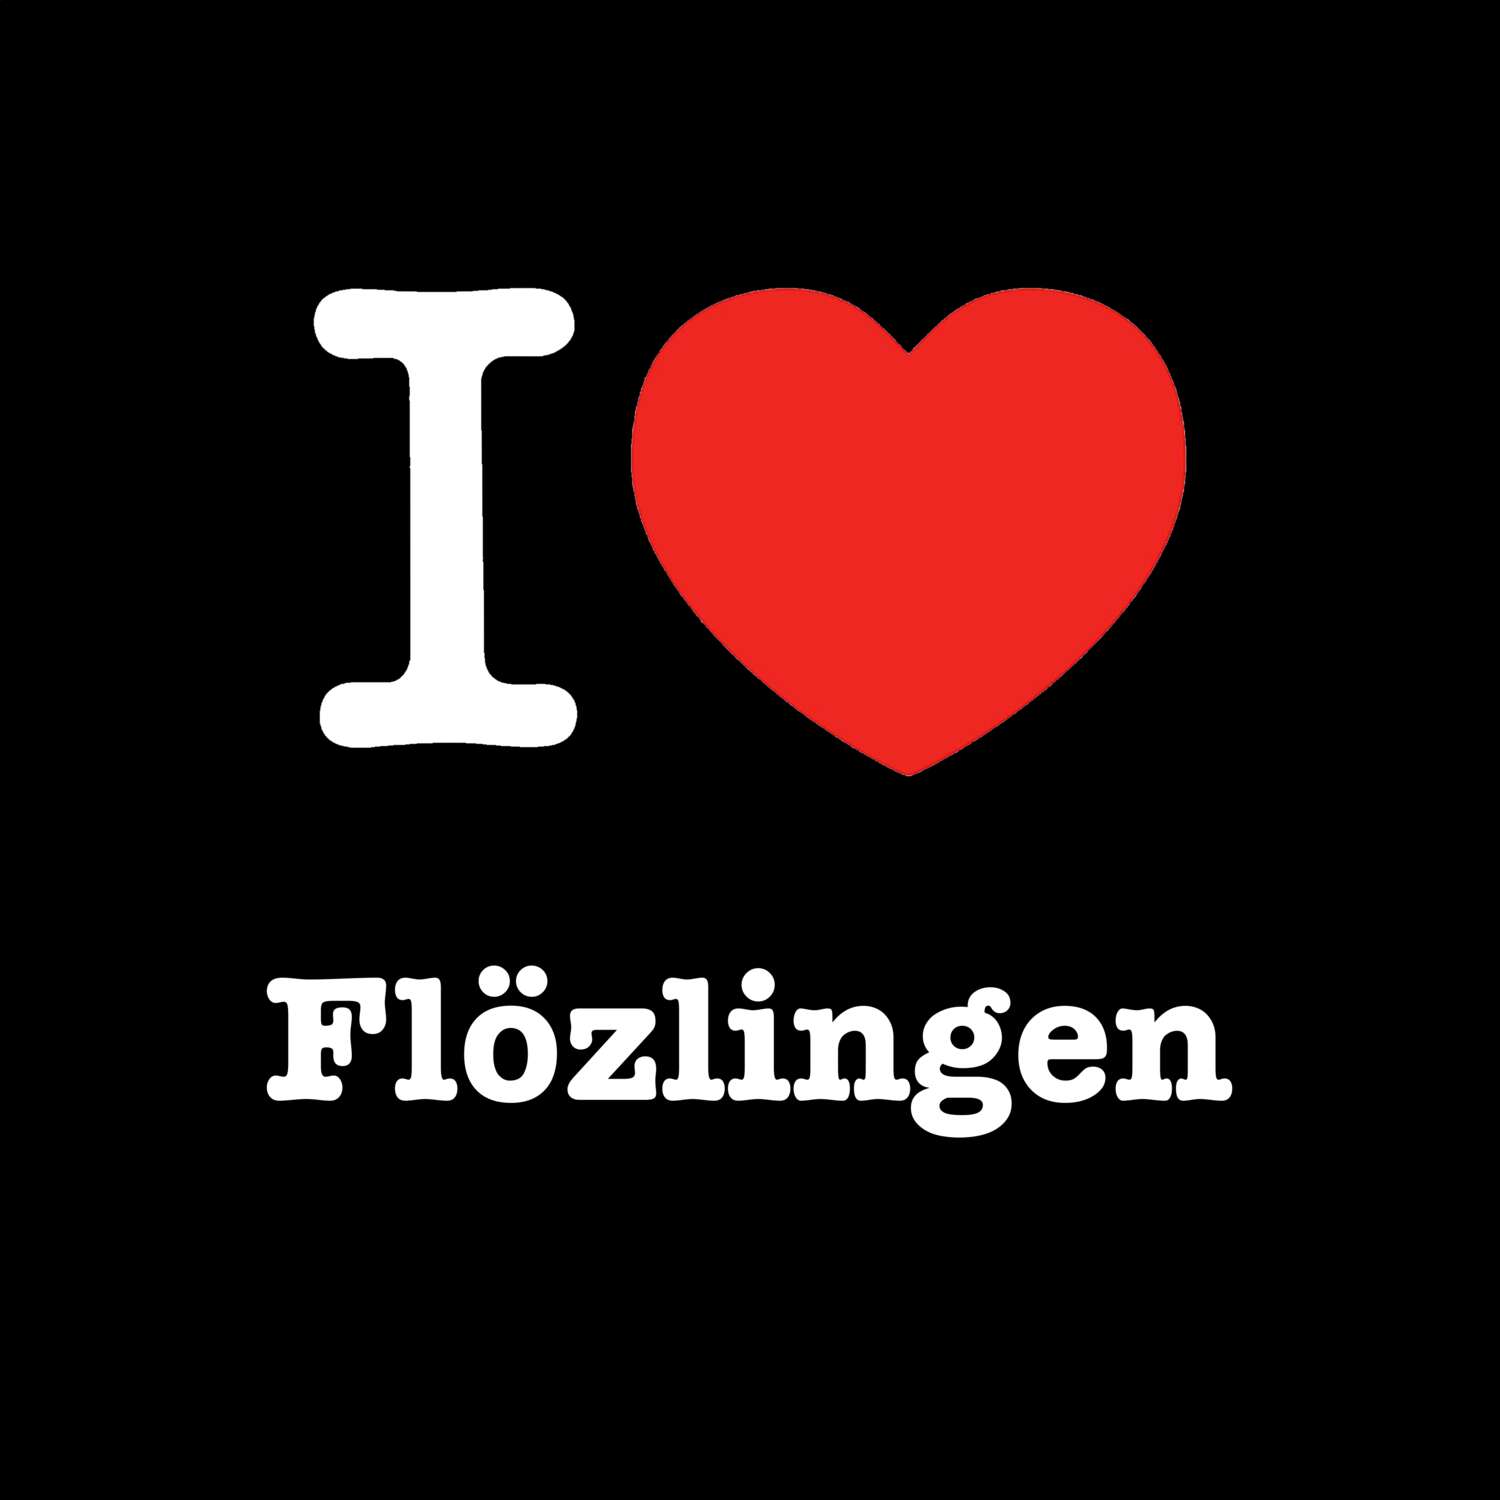 Flözlingen T-Shirt »I love«